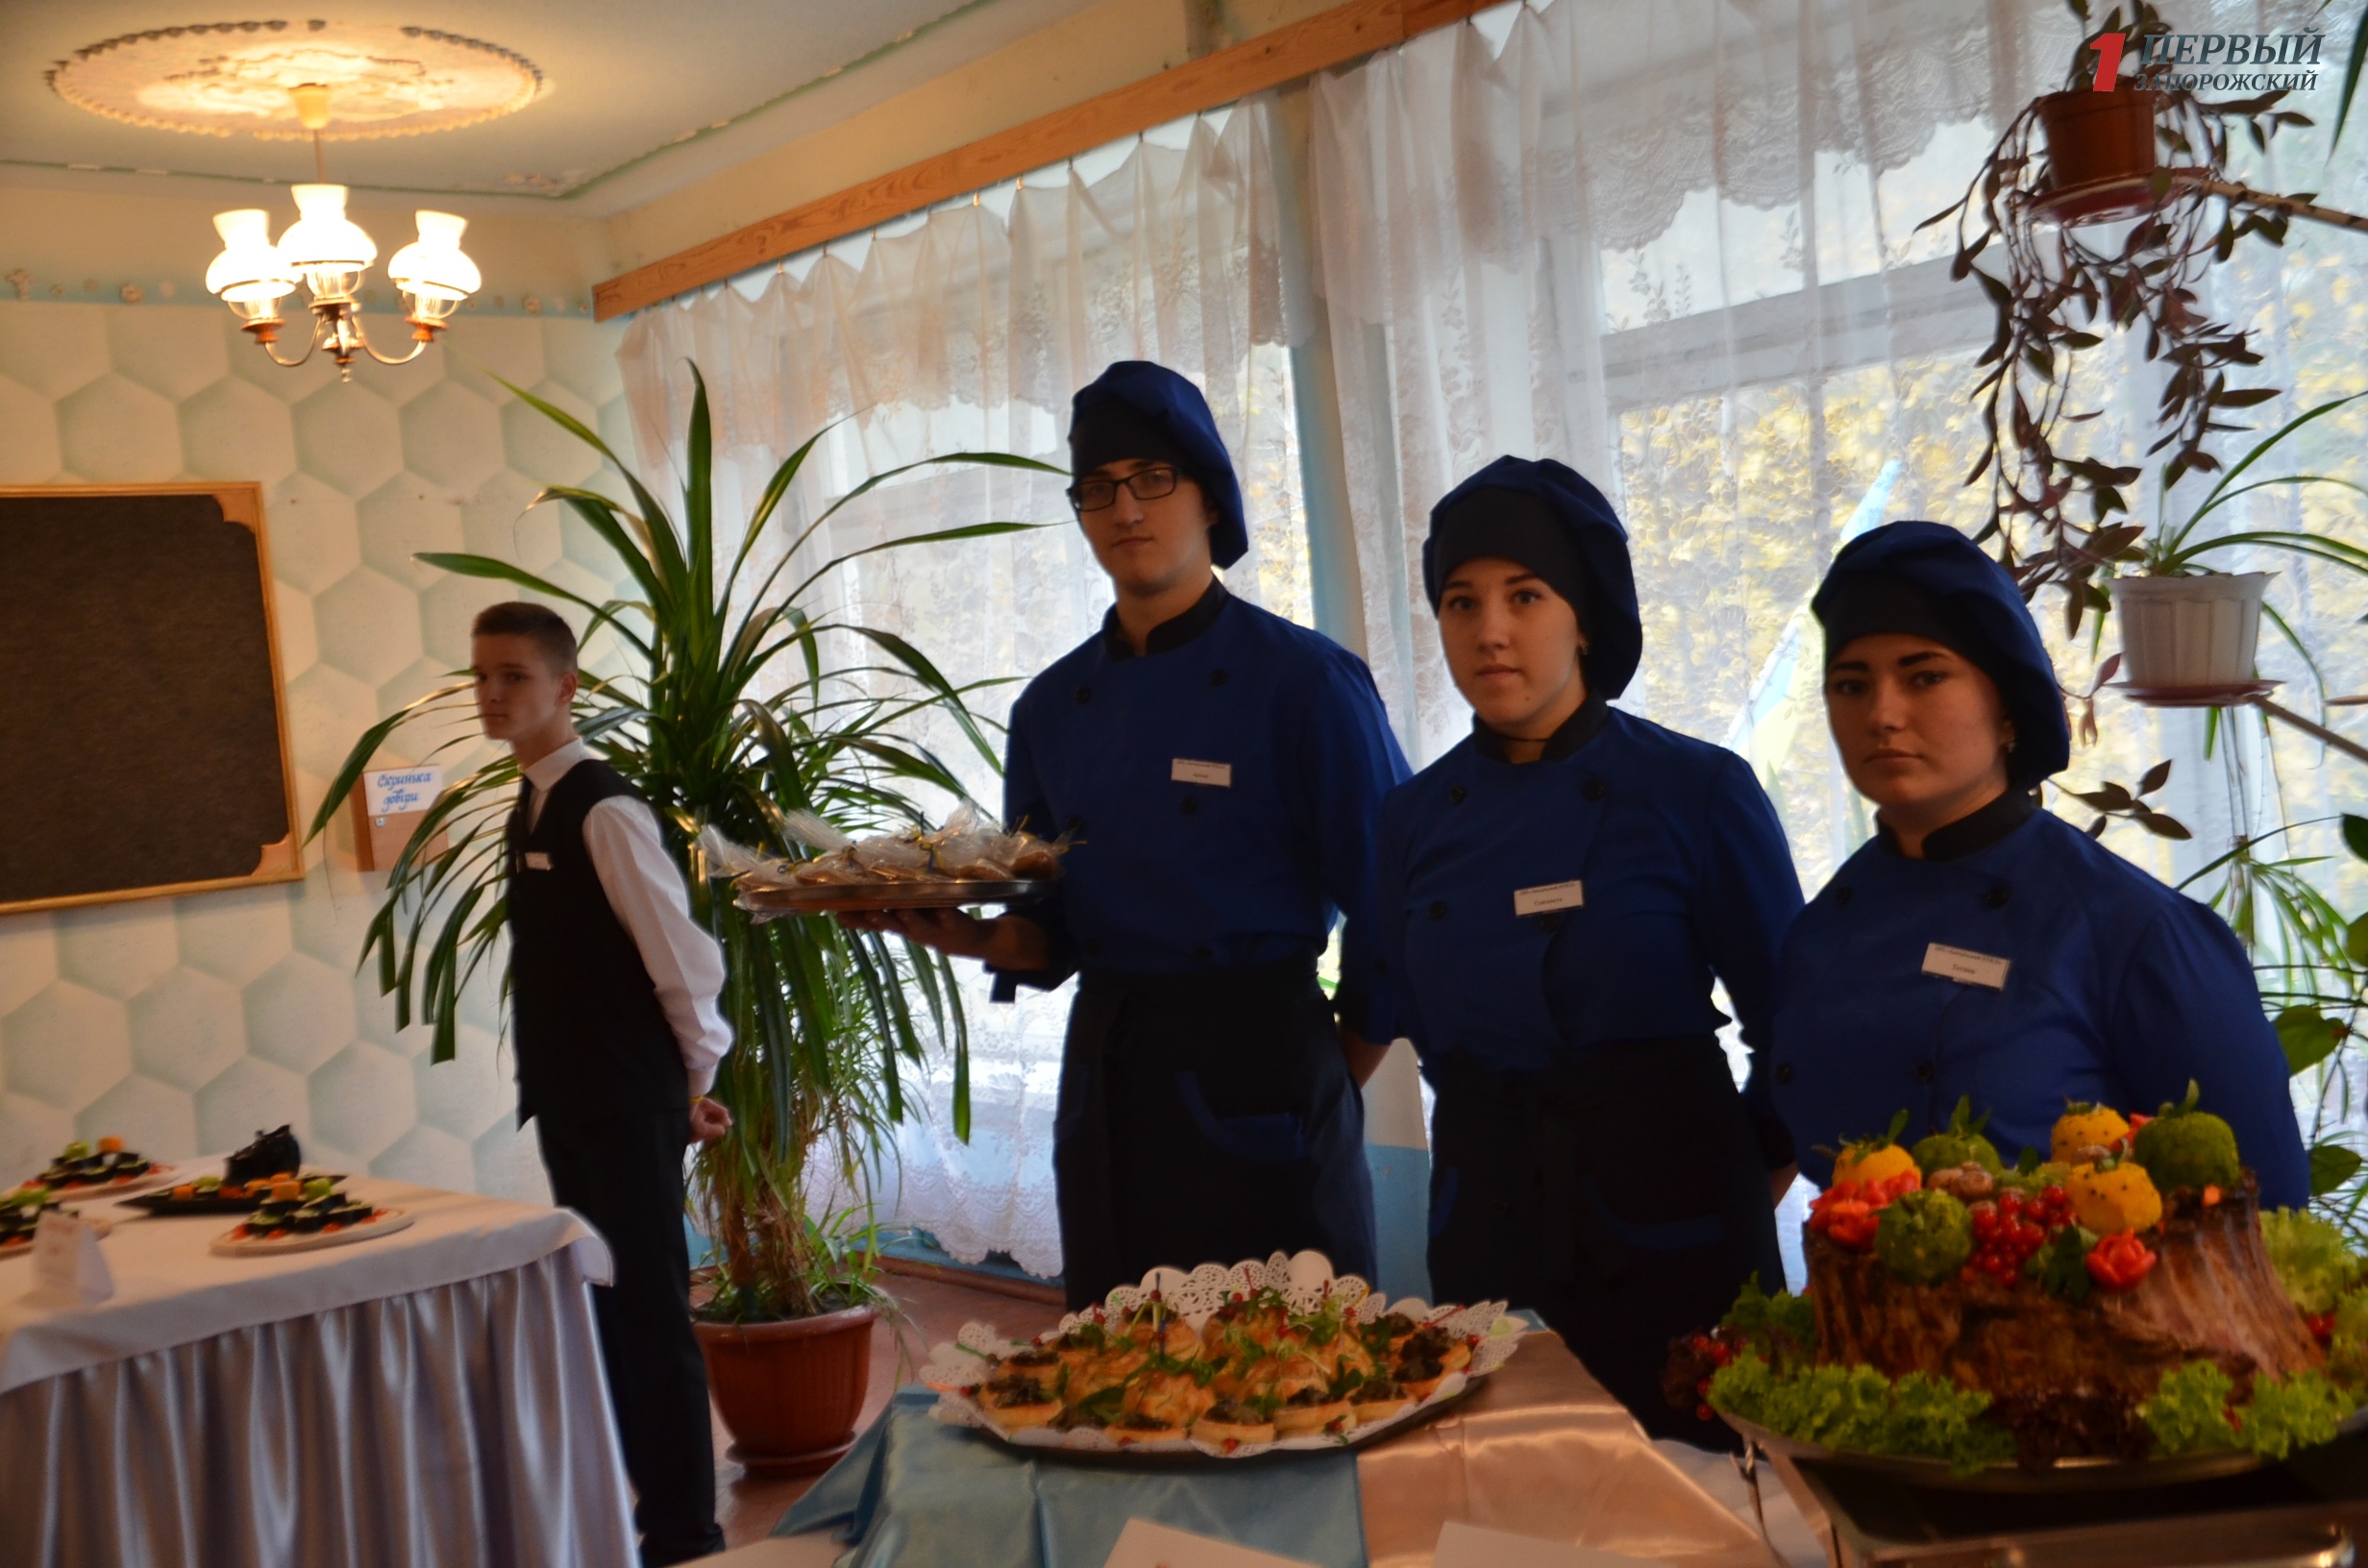 Запорожские студенты примут участие в престижной кулинарной выставке в Кельне - ФОТО